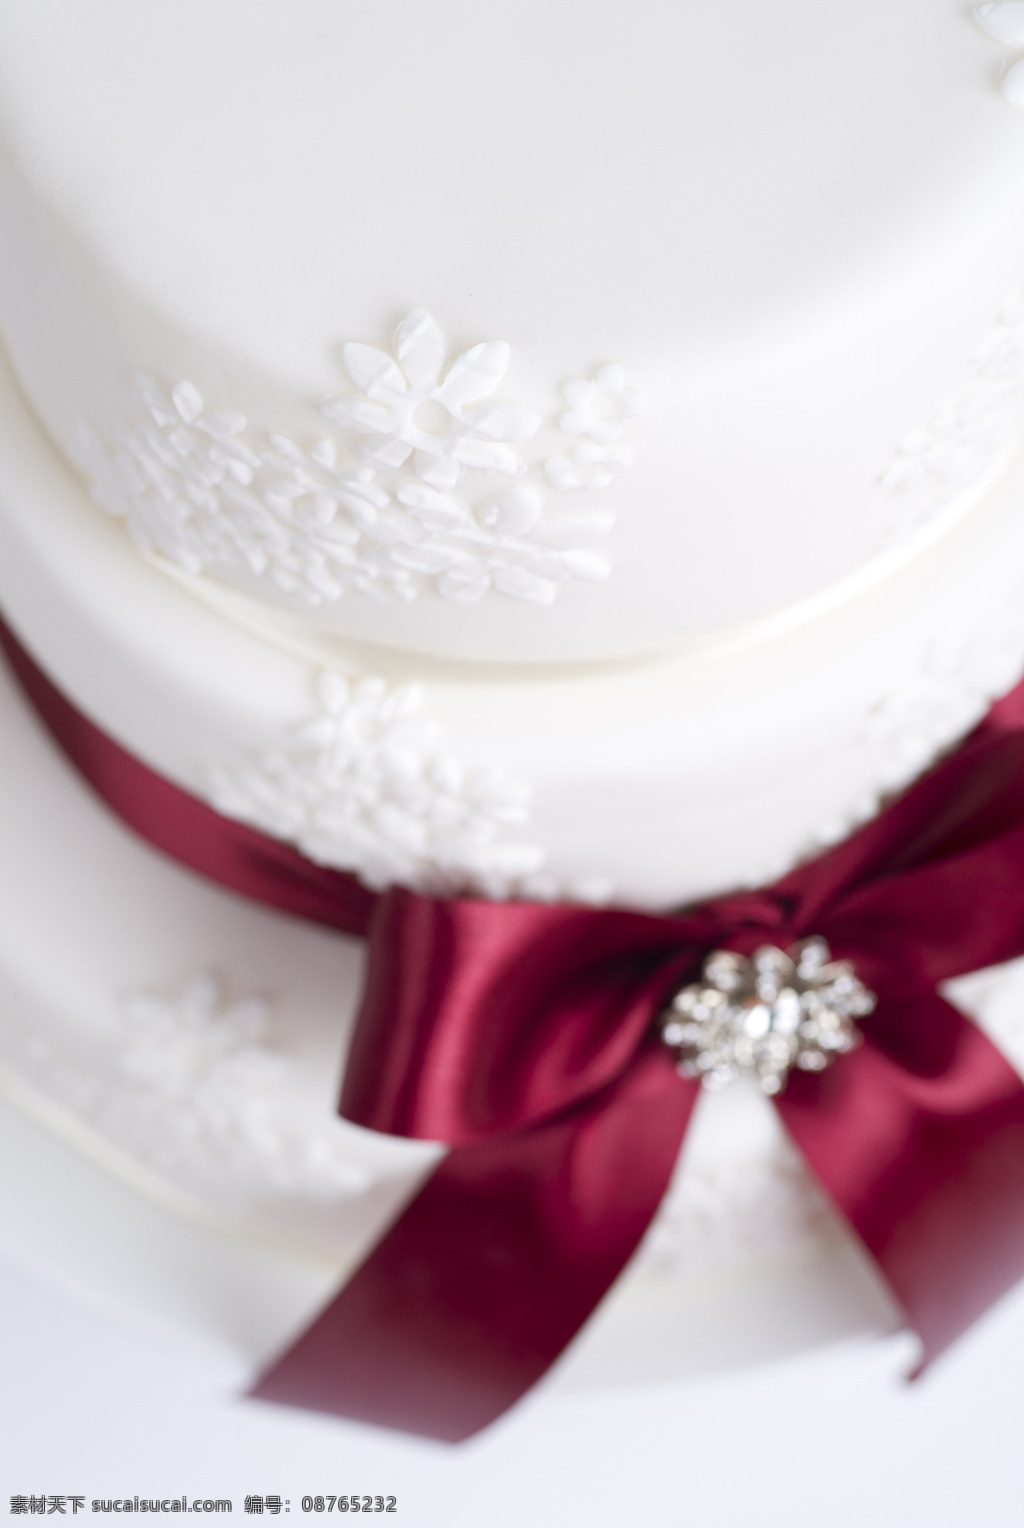 婚礼 蛋糕 白色 餐饮美食 俯视 蝴蝶结 婚礼蛋糕 托盘 细节 西餐美食 psd源文件 餐饮素材